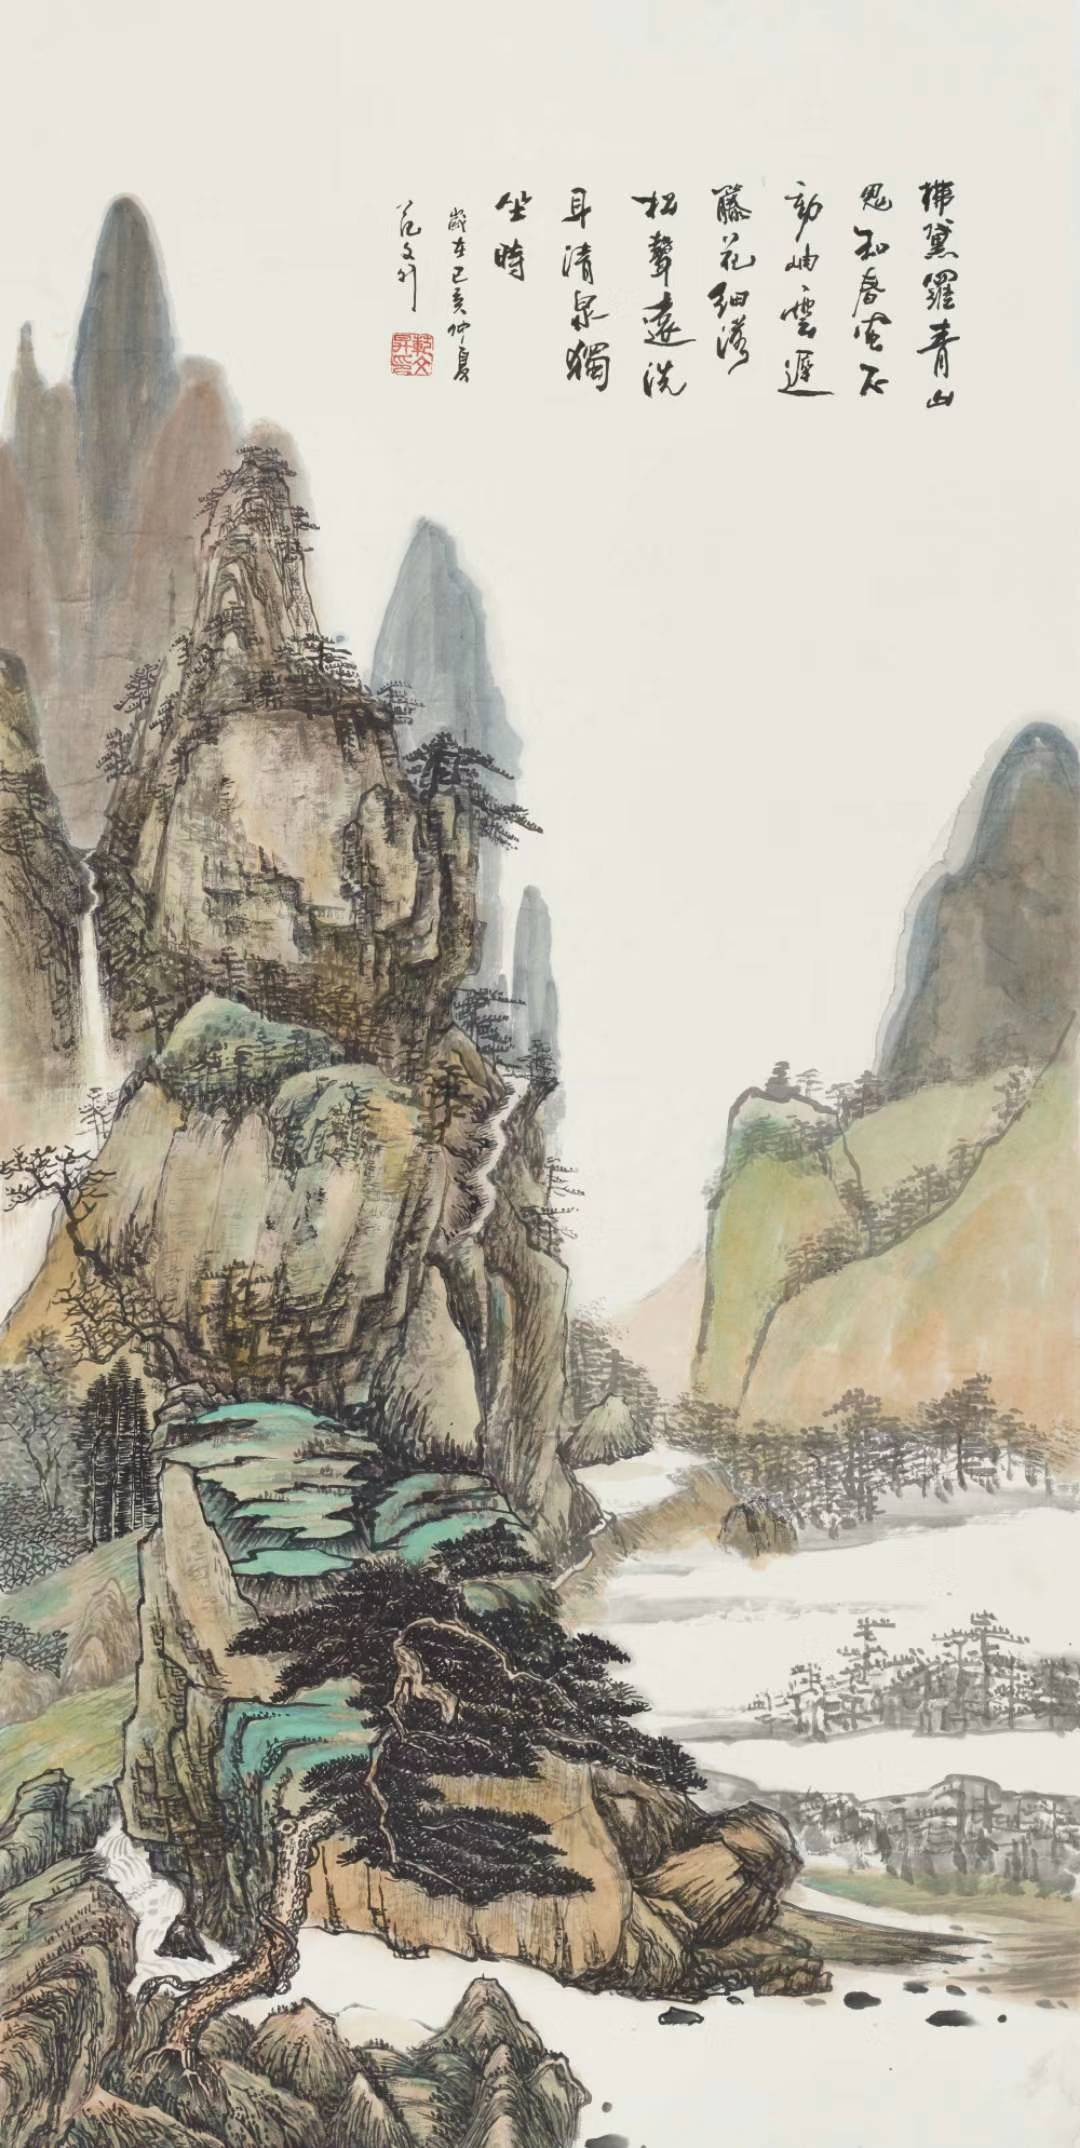 范文升,1965年出生,河南省卢氏县人著名山水画家